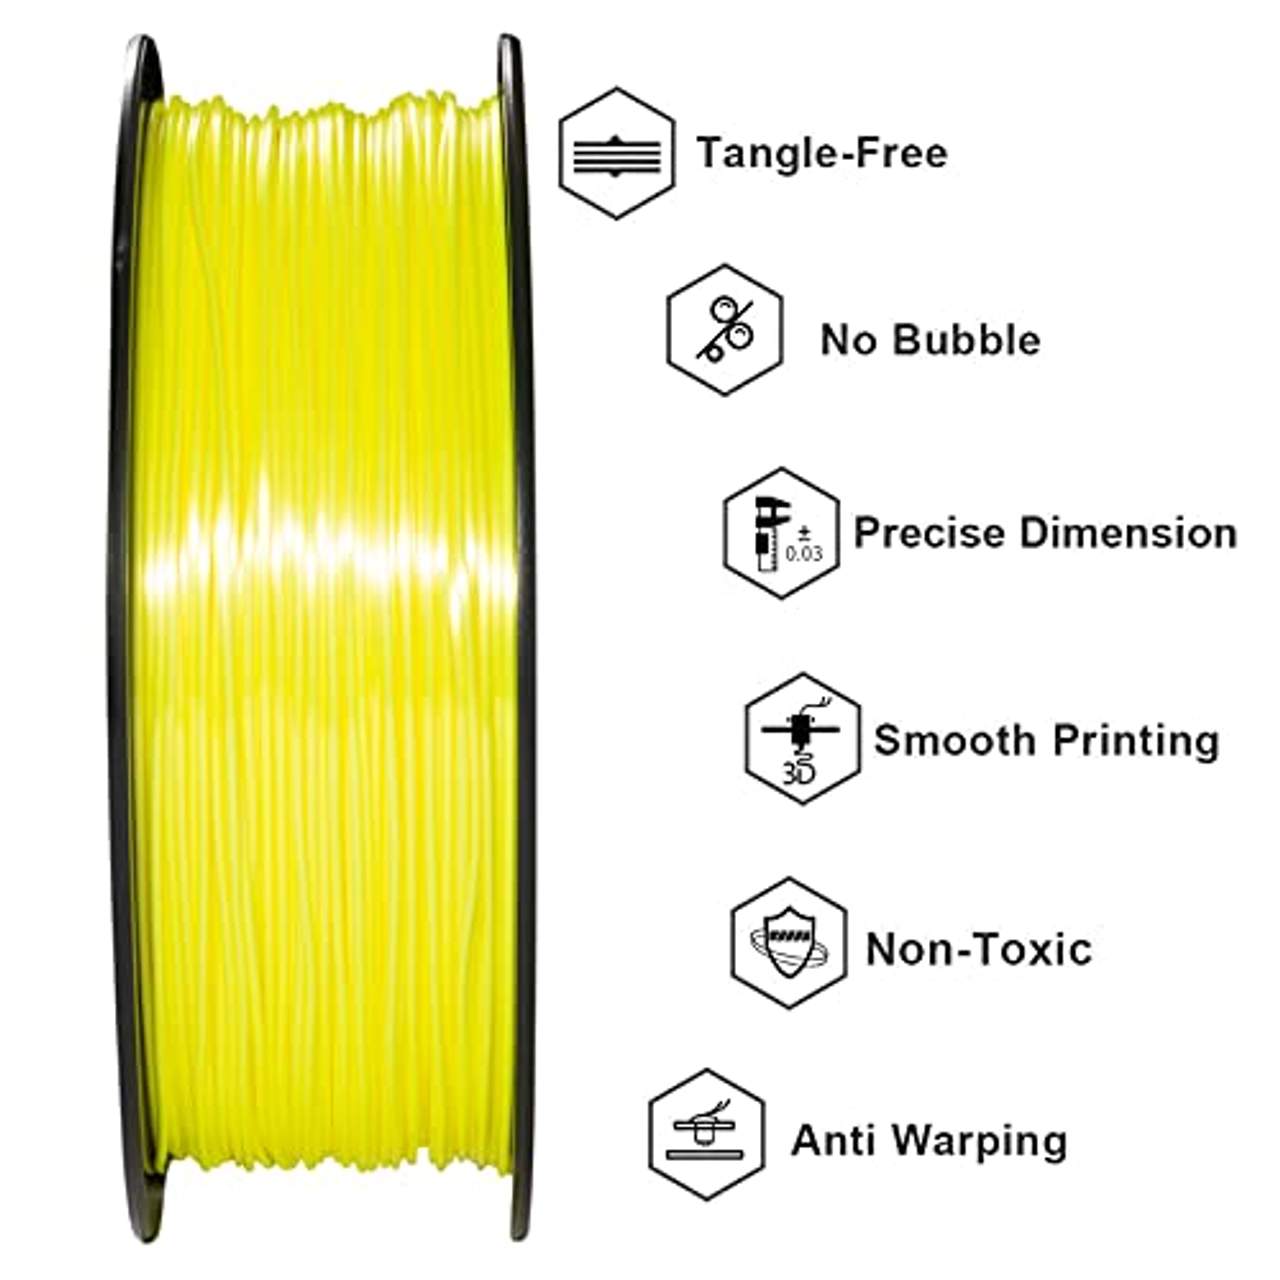 GEEETECH PLA filament 1.75mm Silk Gelb